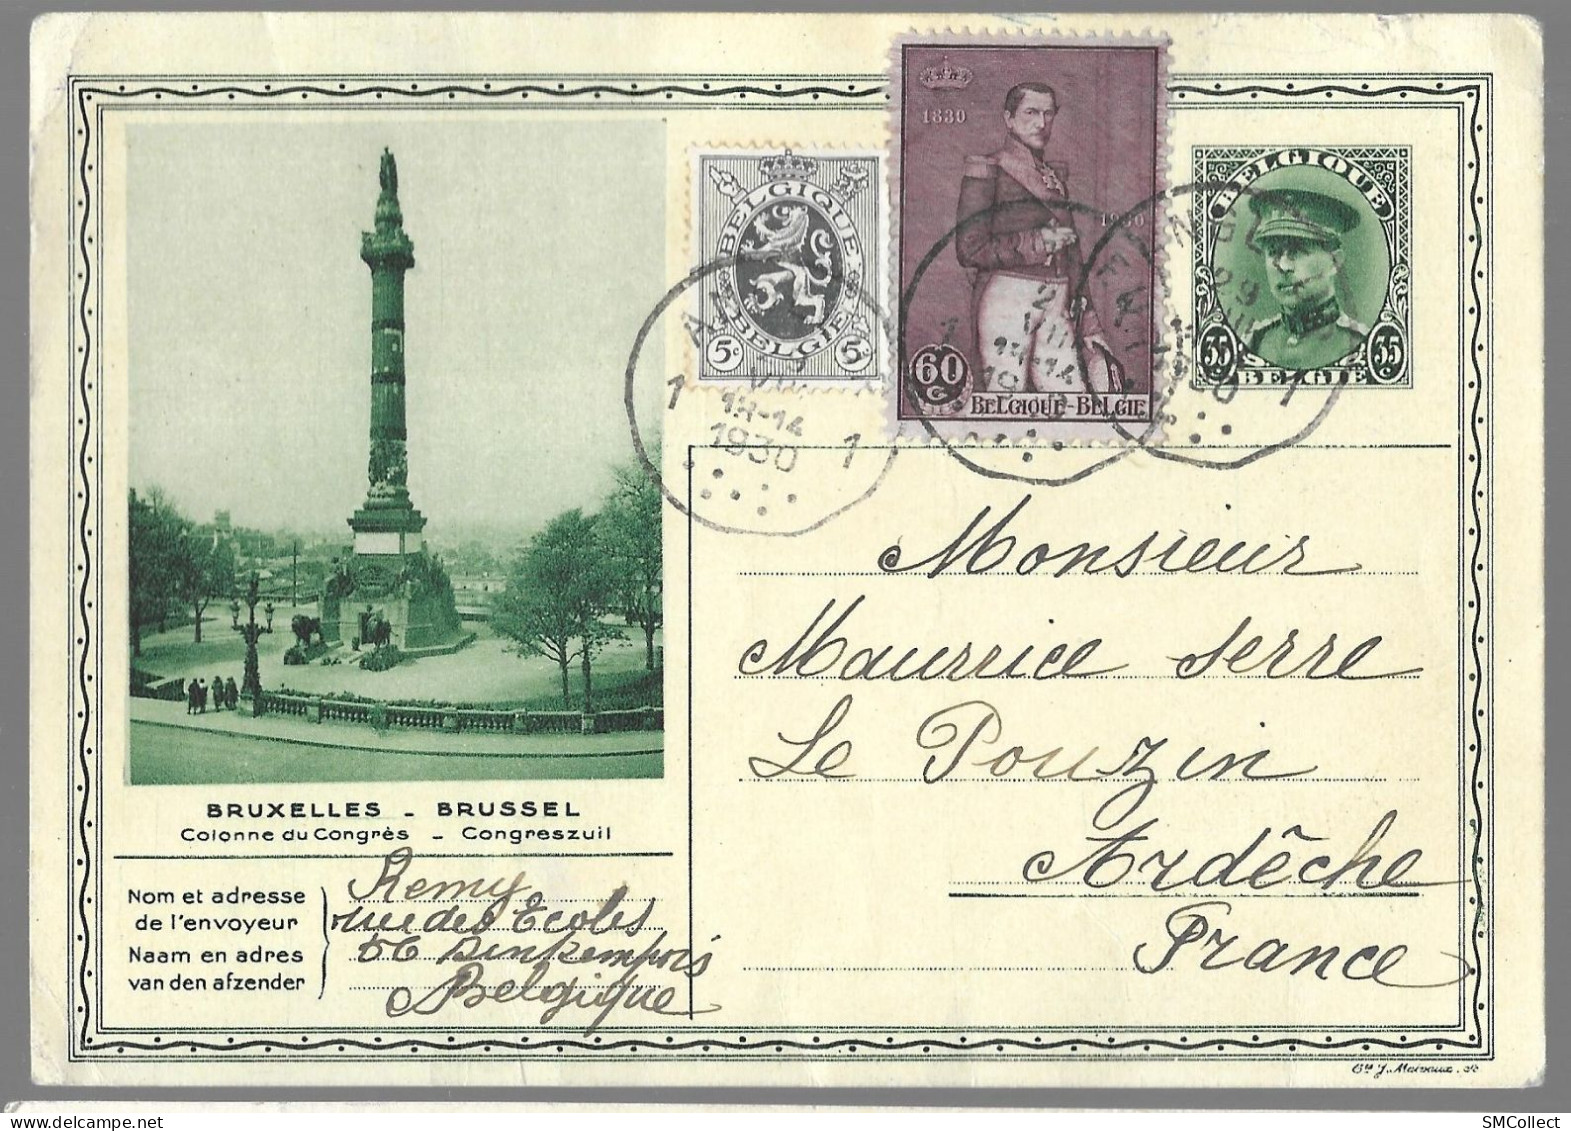 Belgique, Entier Postal "colonne Du Congrès" 35 Centimes + Complément De 65 Centimes (étranger) TAD 1930 (GF3919) - Briefkaarten 1909-1934